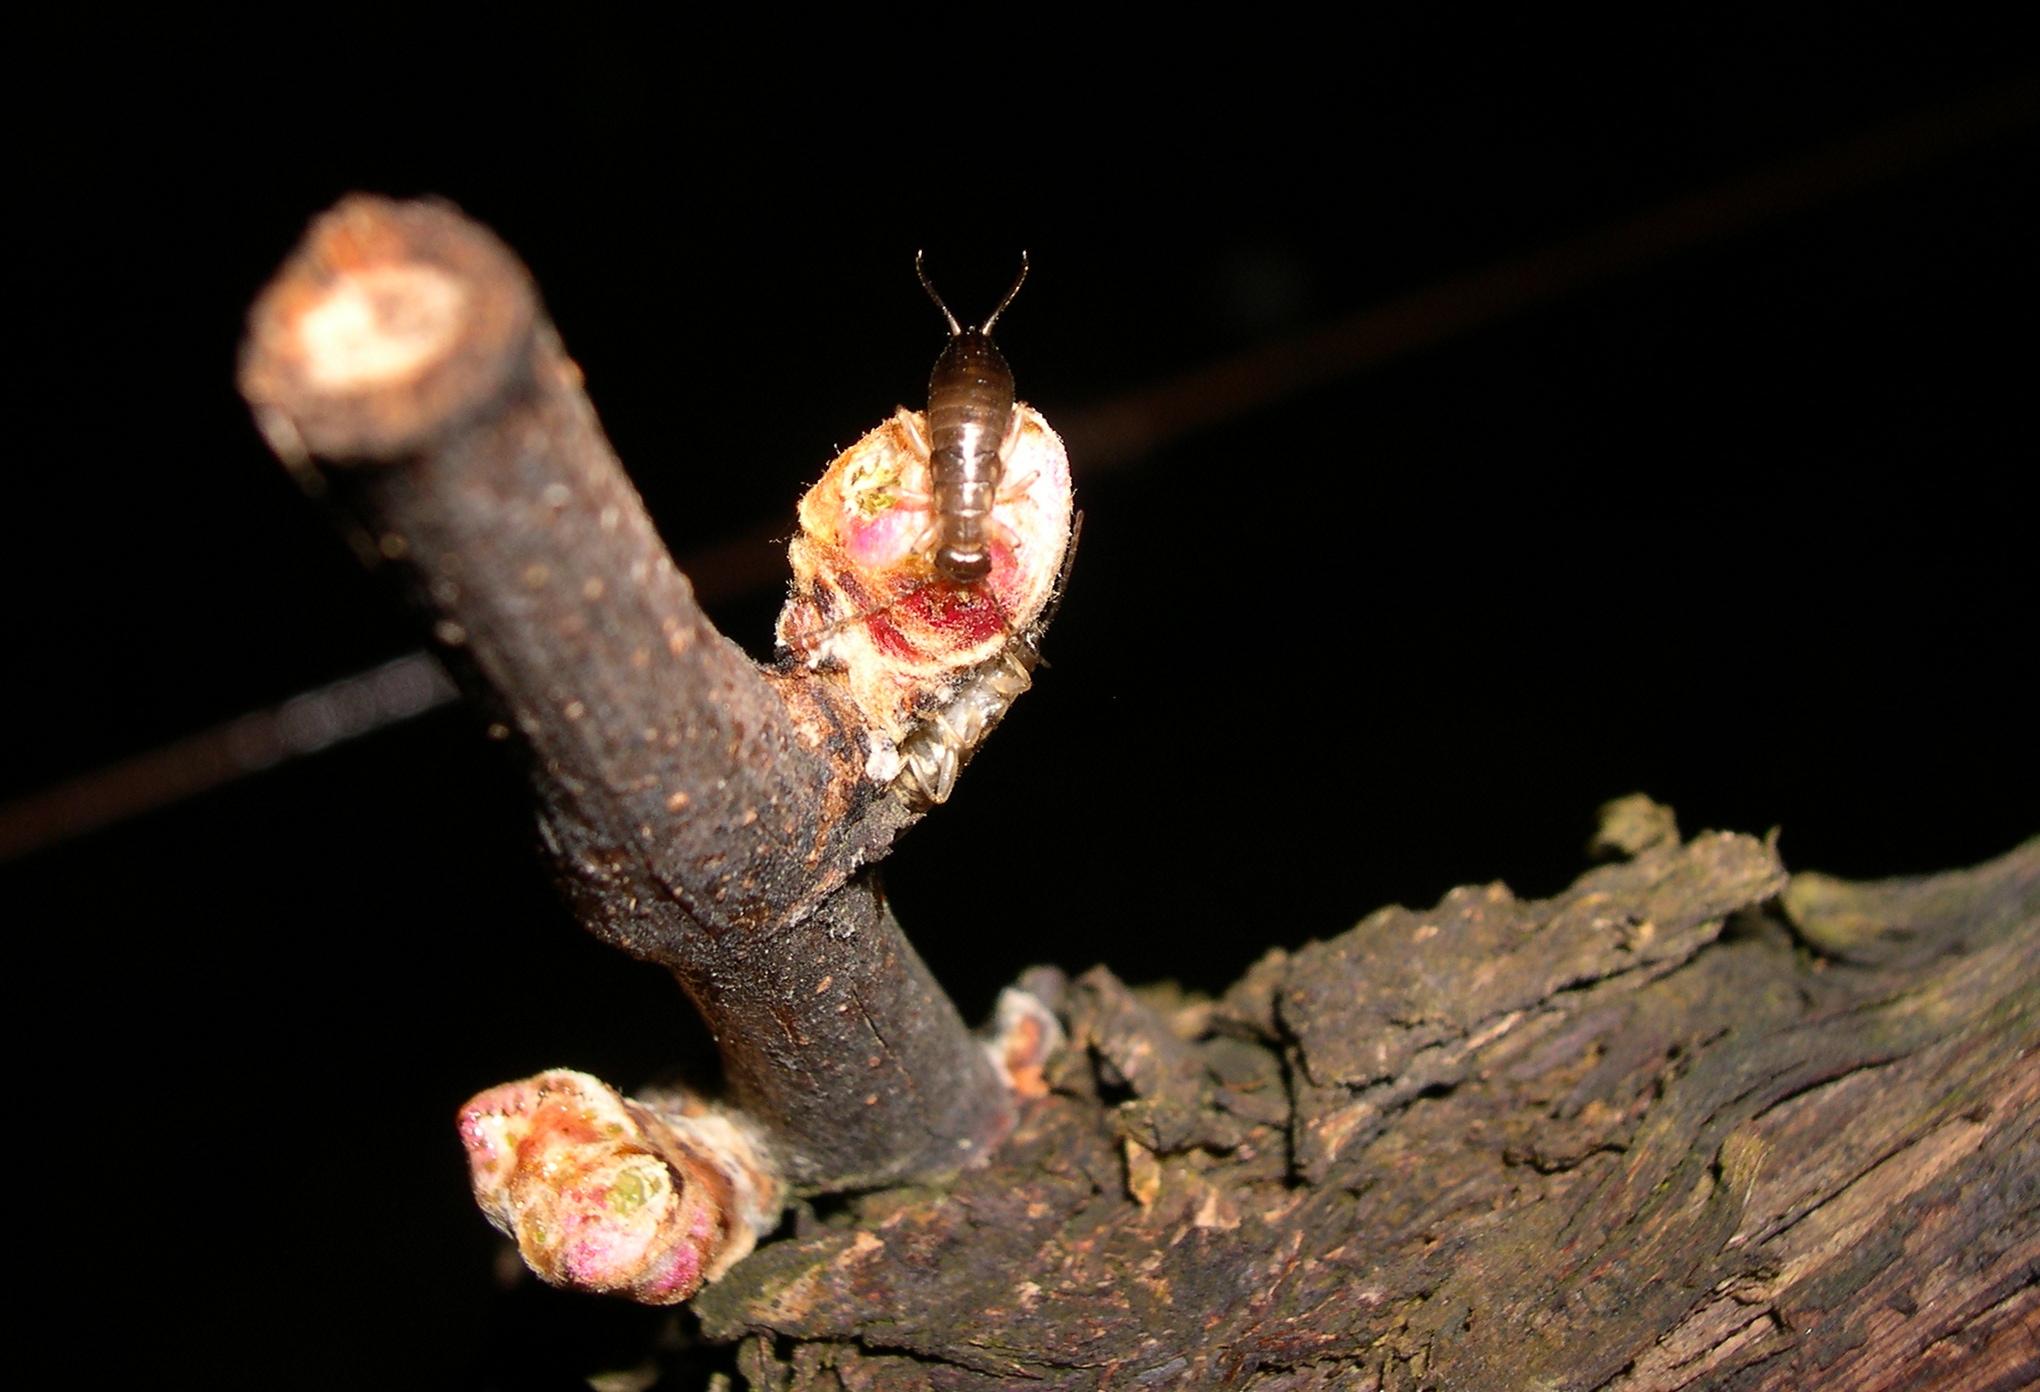 Fig. 2a. European earwig feeding on a bud. Photo: Rhonda Smith